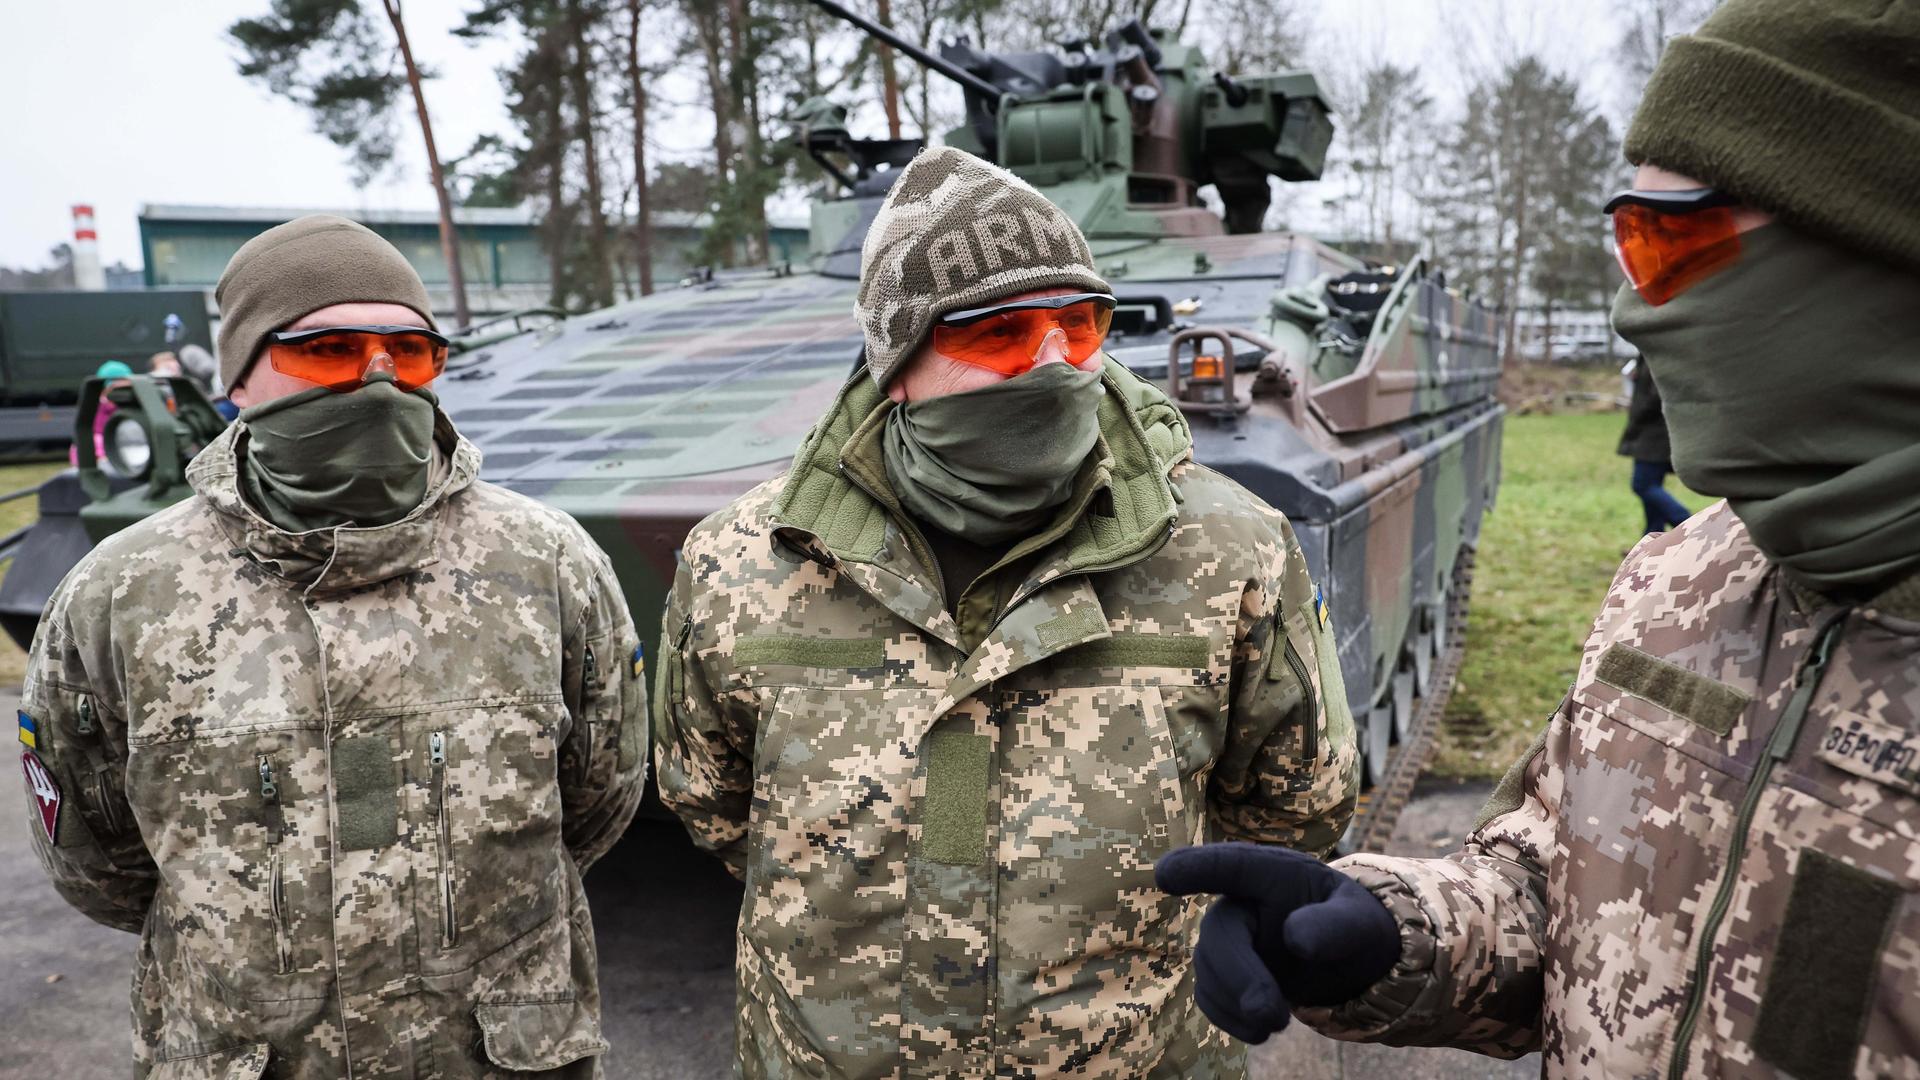 Zu sehen sind drei ukrainische Soldaten vor einem Schützenpanzer Marder in der Panzertruppenschule im niedersächsischen Munster.